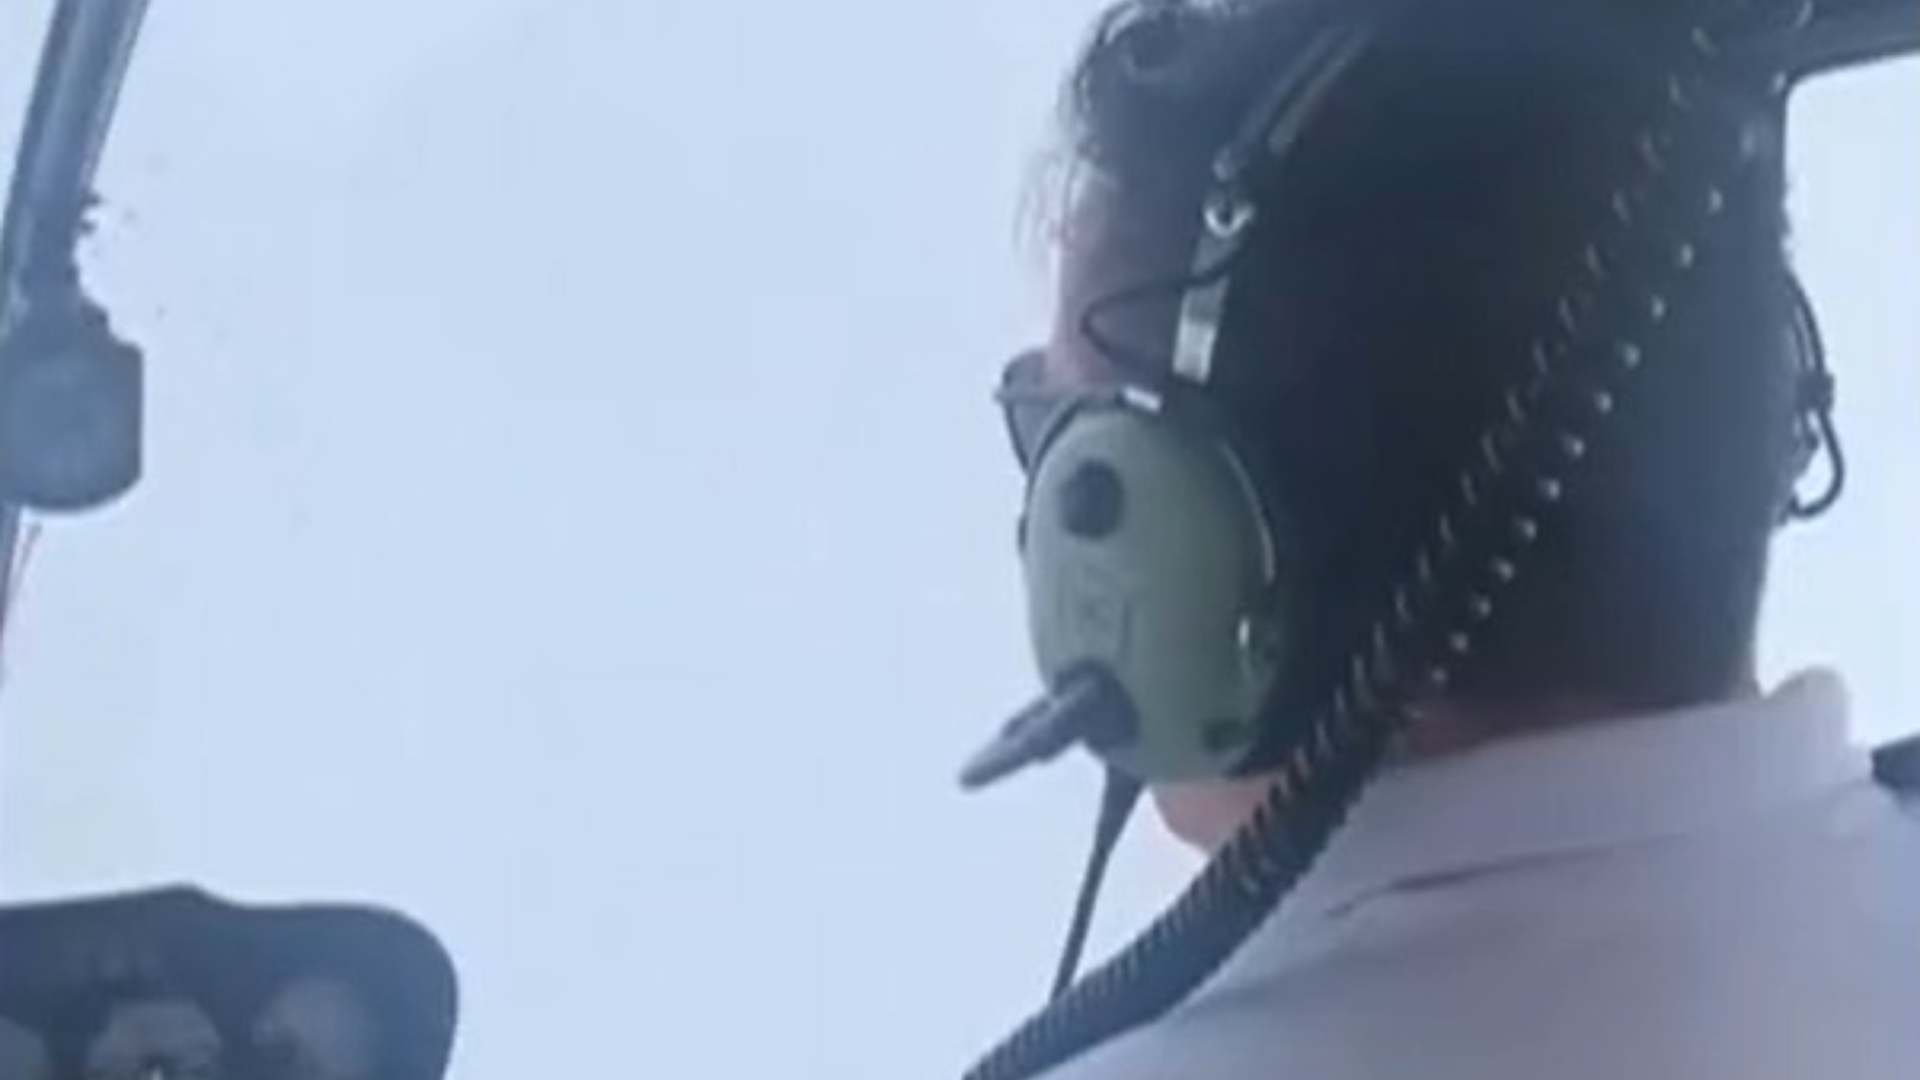 Passageira de helicóptero desaparecido em SP gravou vídeo a bordo pouco antes de sumiço; assista